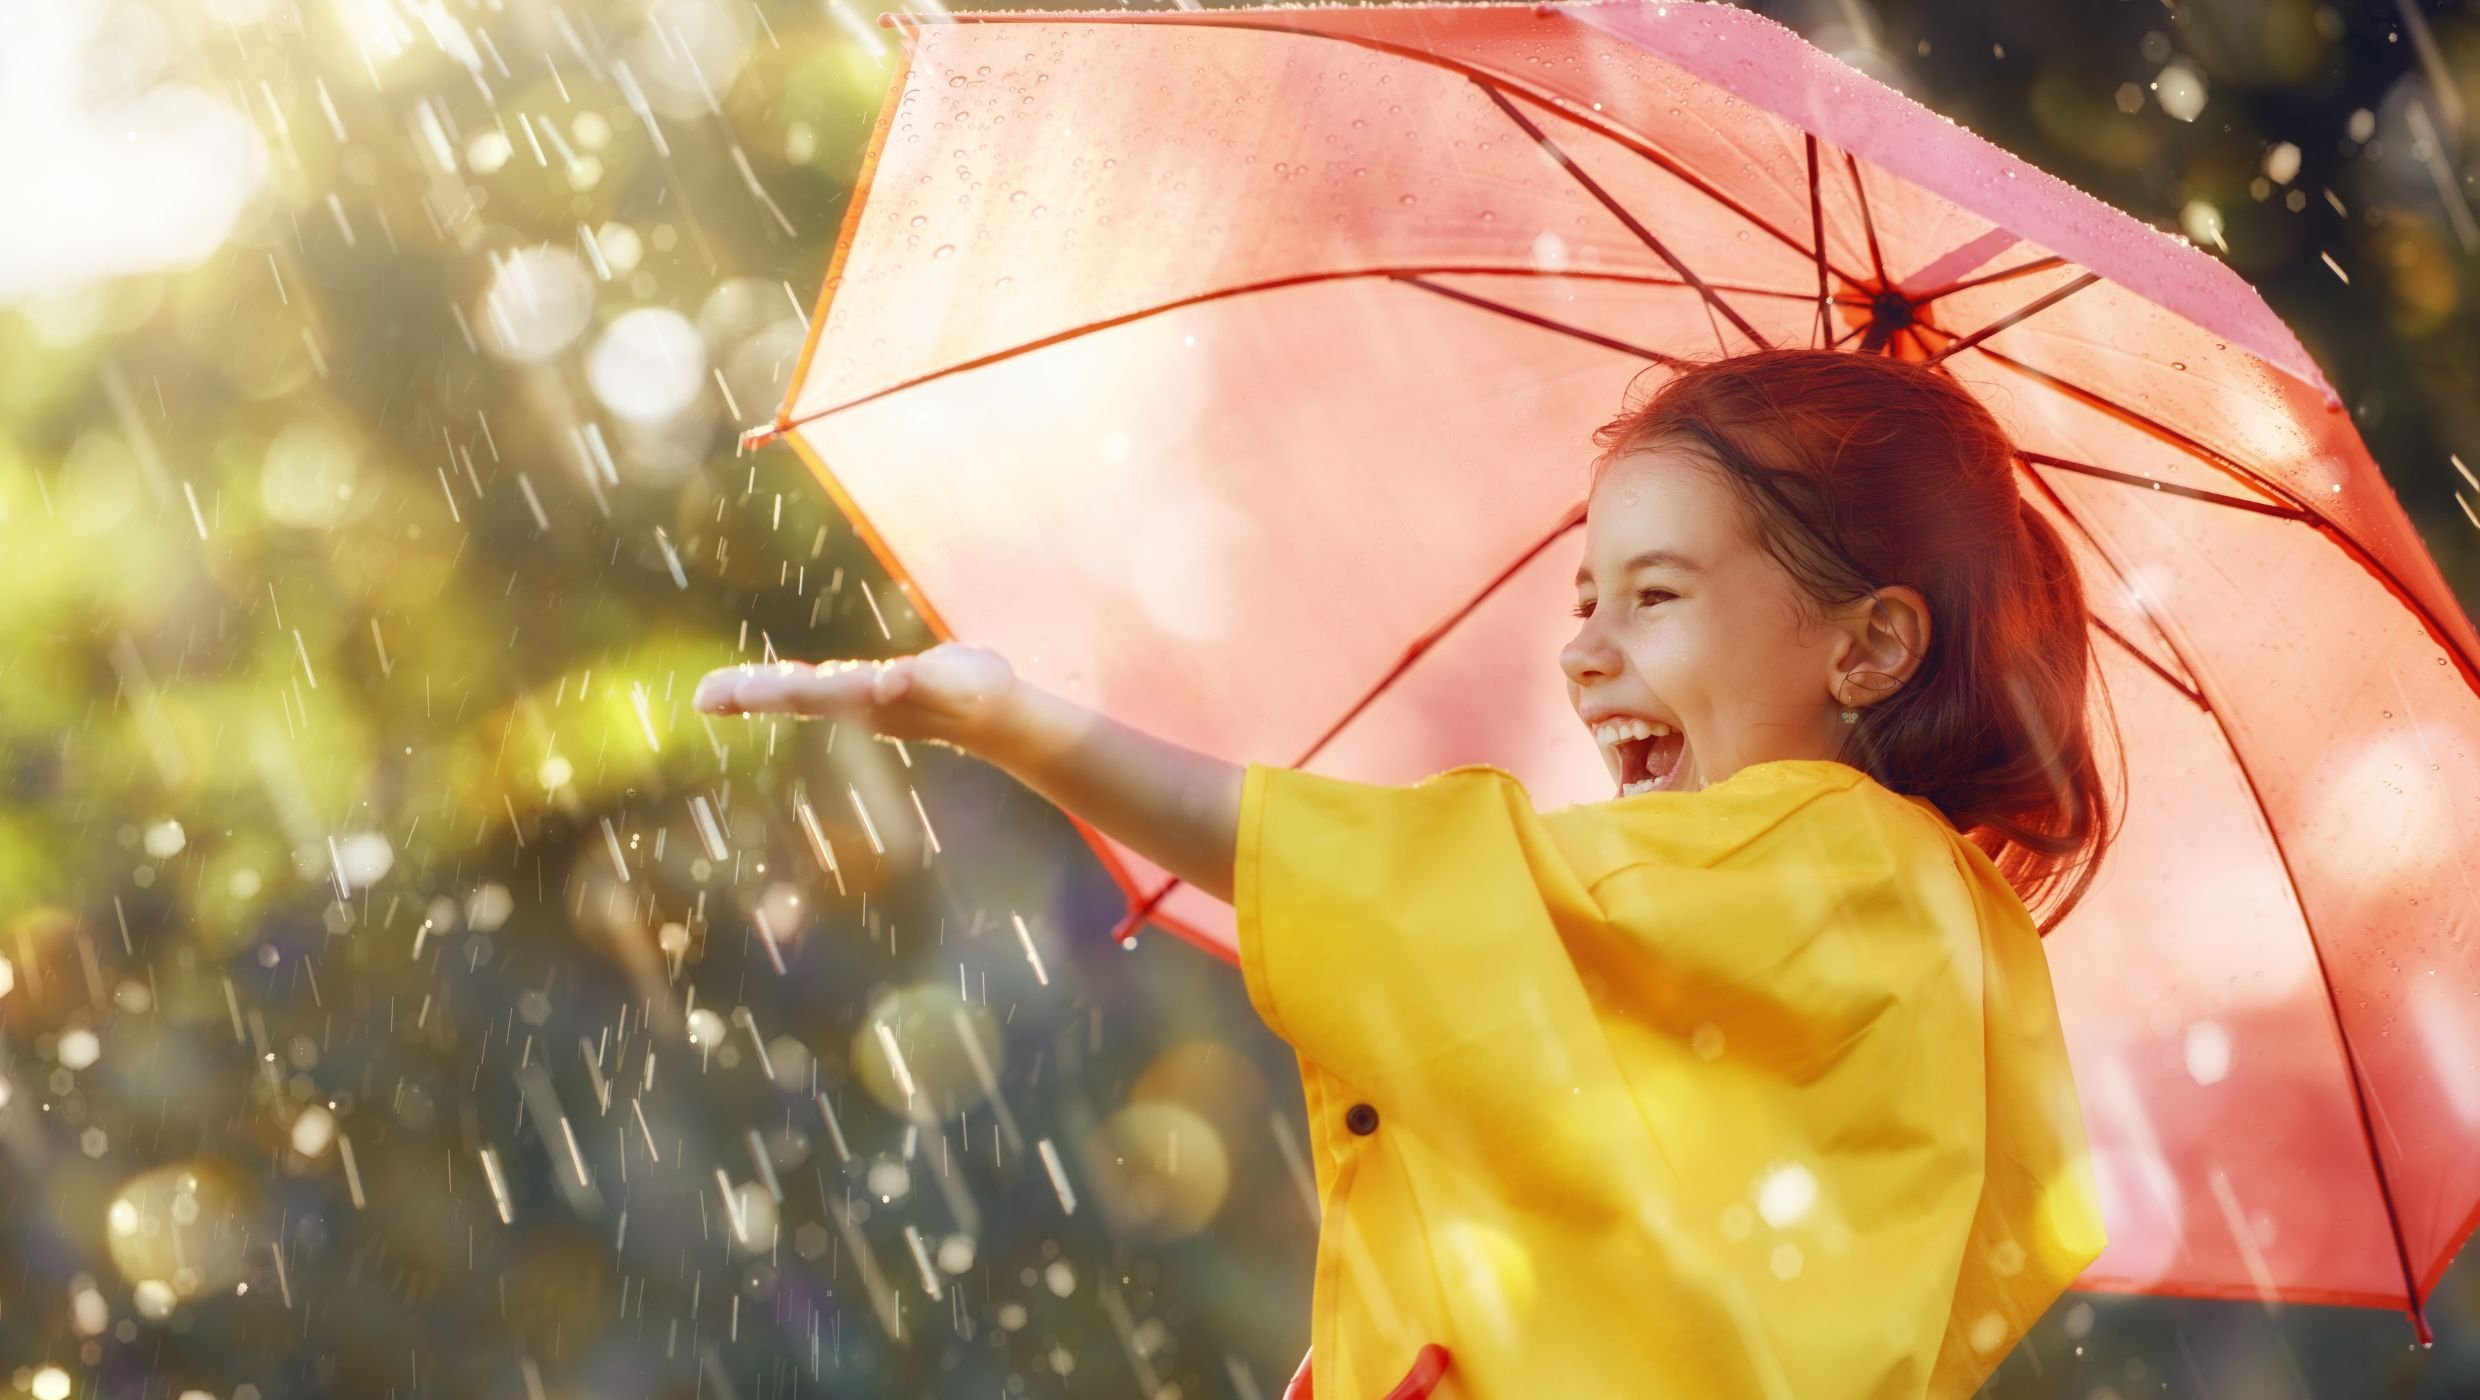 Pieni ruskeahiuksinen tyttö keltaisessa sadetakissa ja vaaleanpunaisen sateenvarjon alla ojentaa vasemman käden kohti sadepisaroita. Taustalla näkyy vihreää ja auringon pilkahduksia.